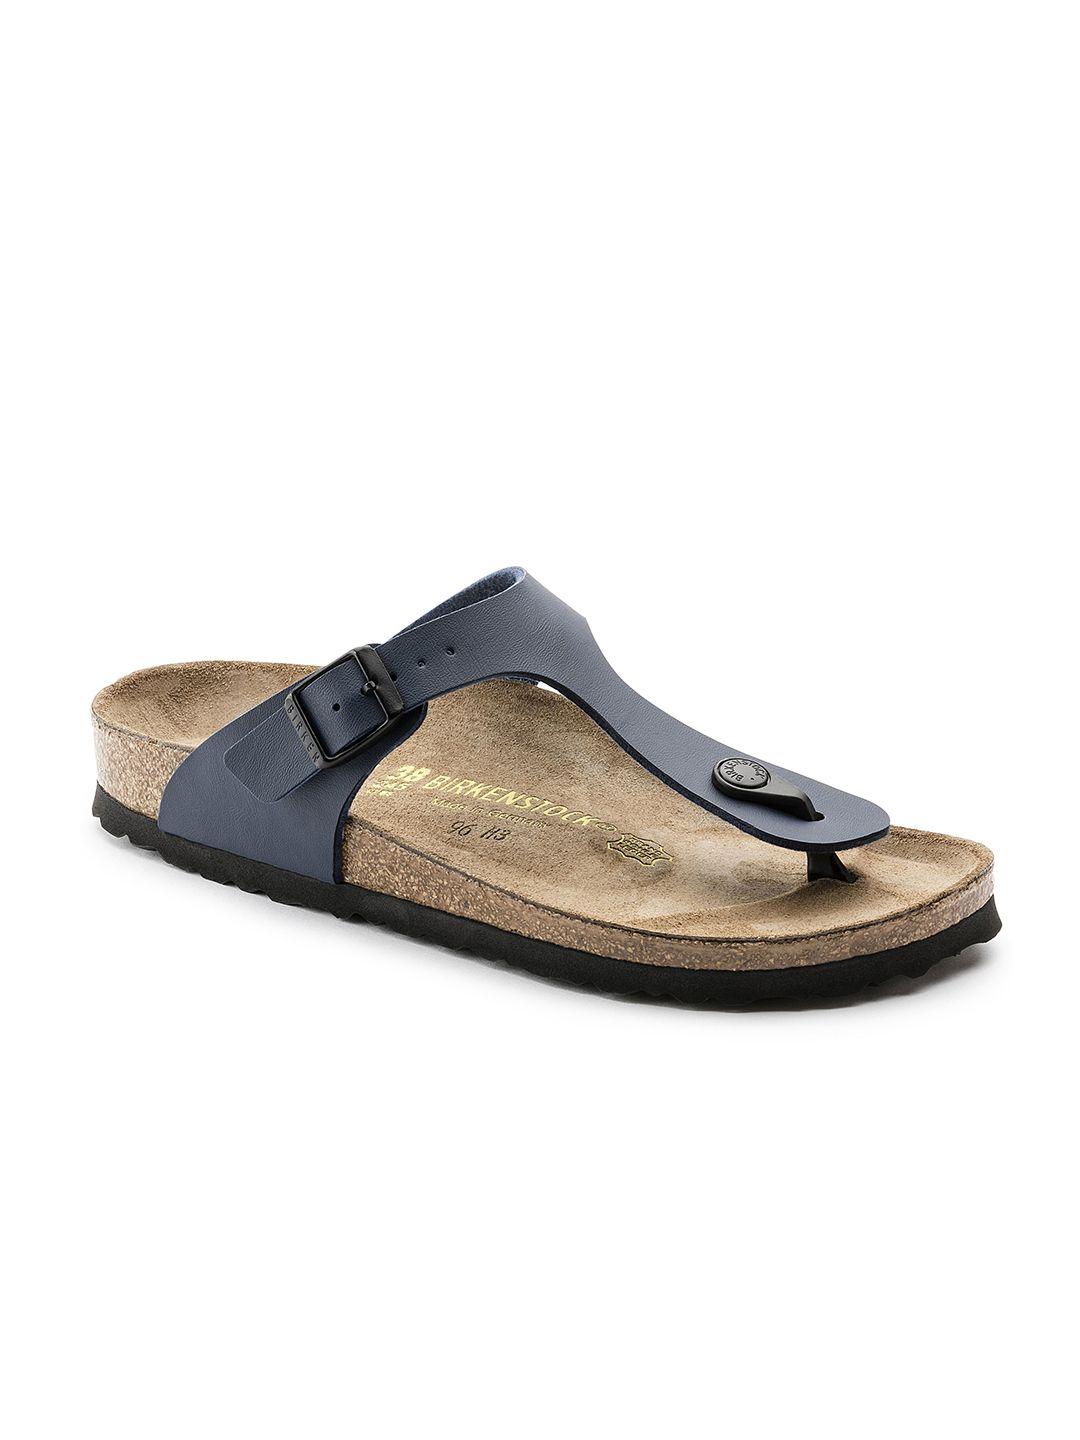 birkenstock unisex navy blue gizeh birko-flor regular width comfort sandals